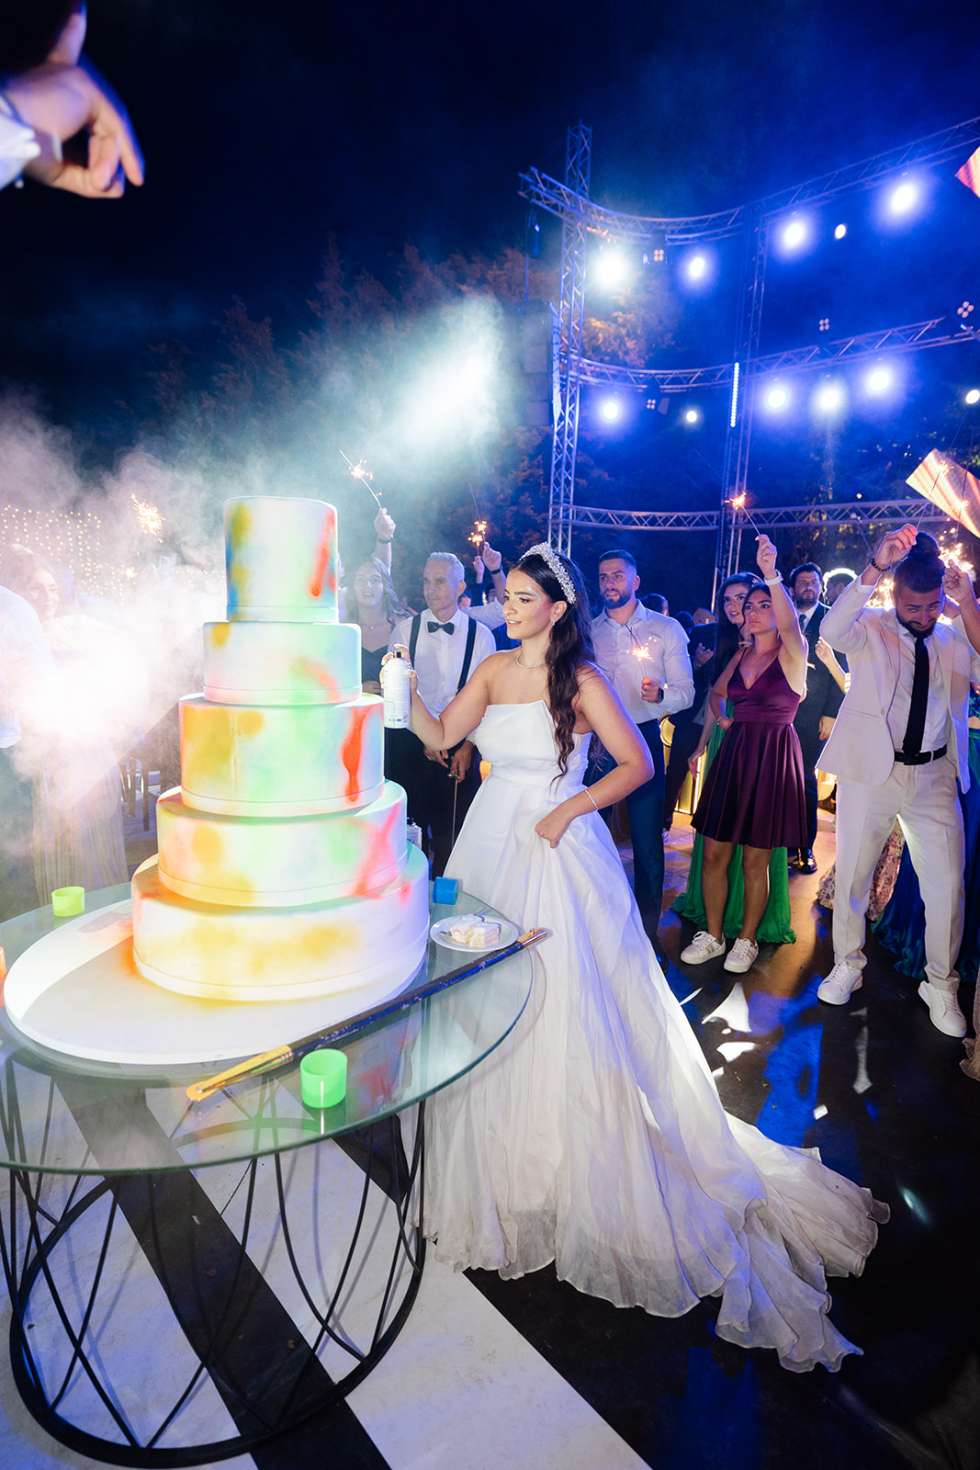 حفل زفاف رومانسي في لبنان